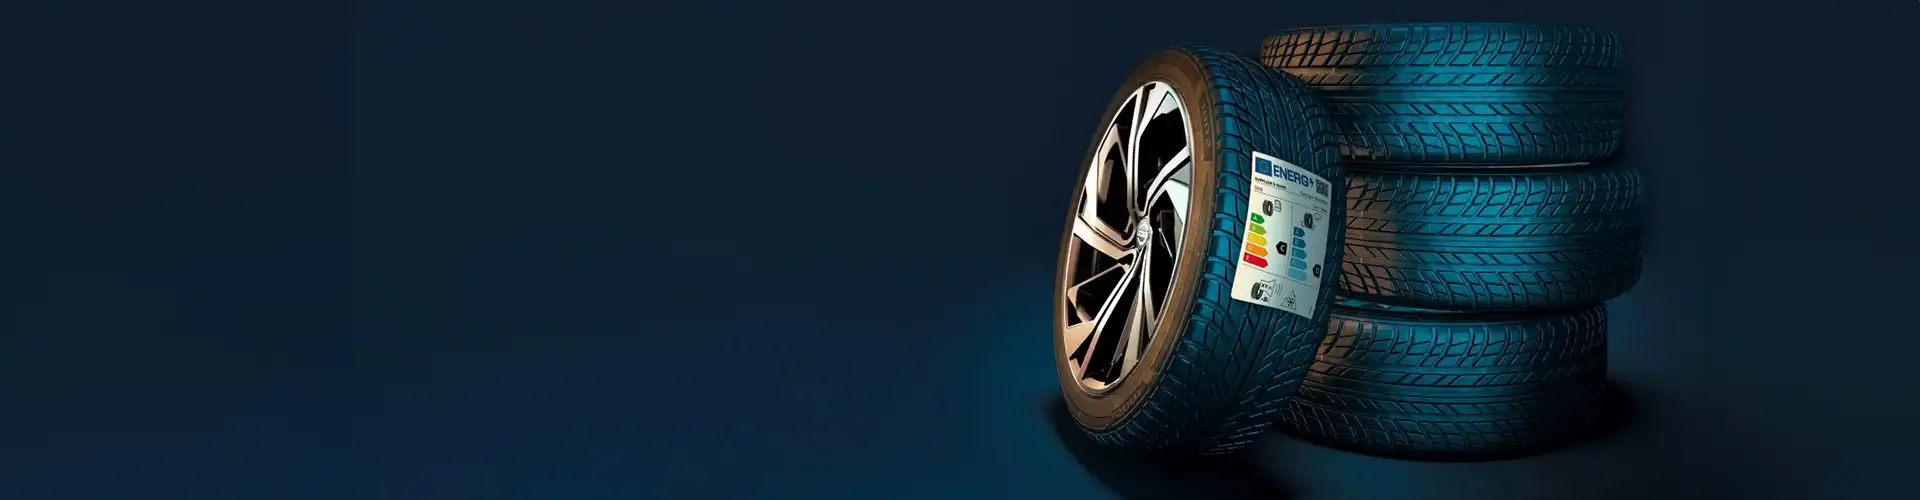 samedis changements de pneus Nissan dans votre garage Autos Carouge à Genève